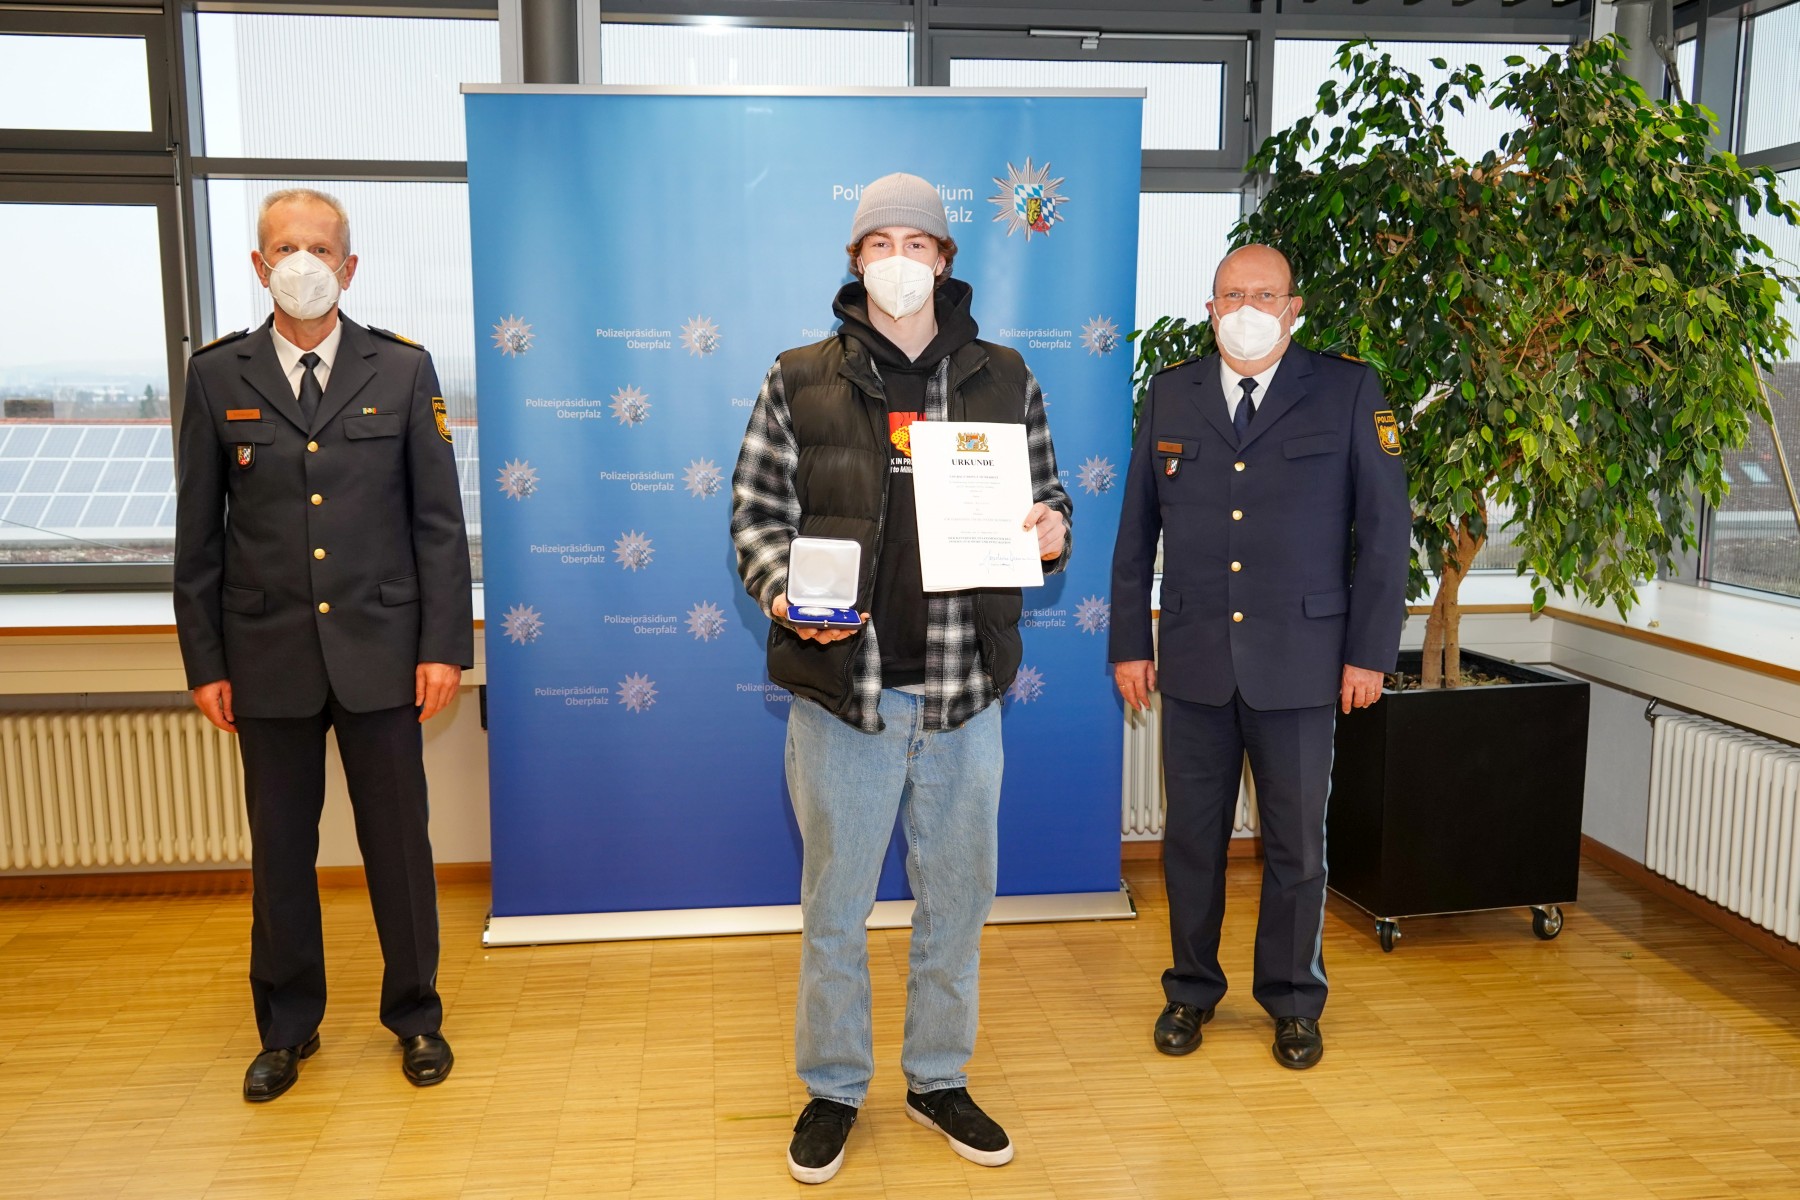 V.l.n.r.: Polizeivizepräsident Thomas Schöniger, Andreas Spitzner, Polizeipräsident Norbert Zink Foto: Polizeipräsidium Oberpfalz